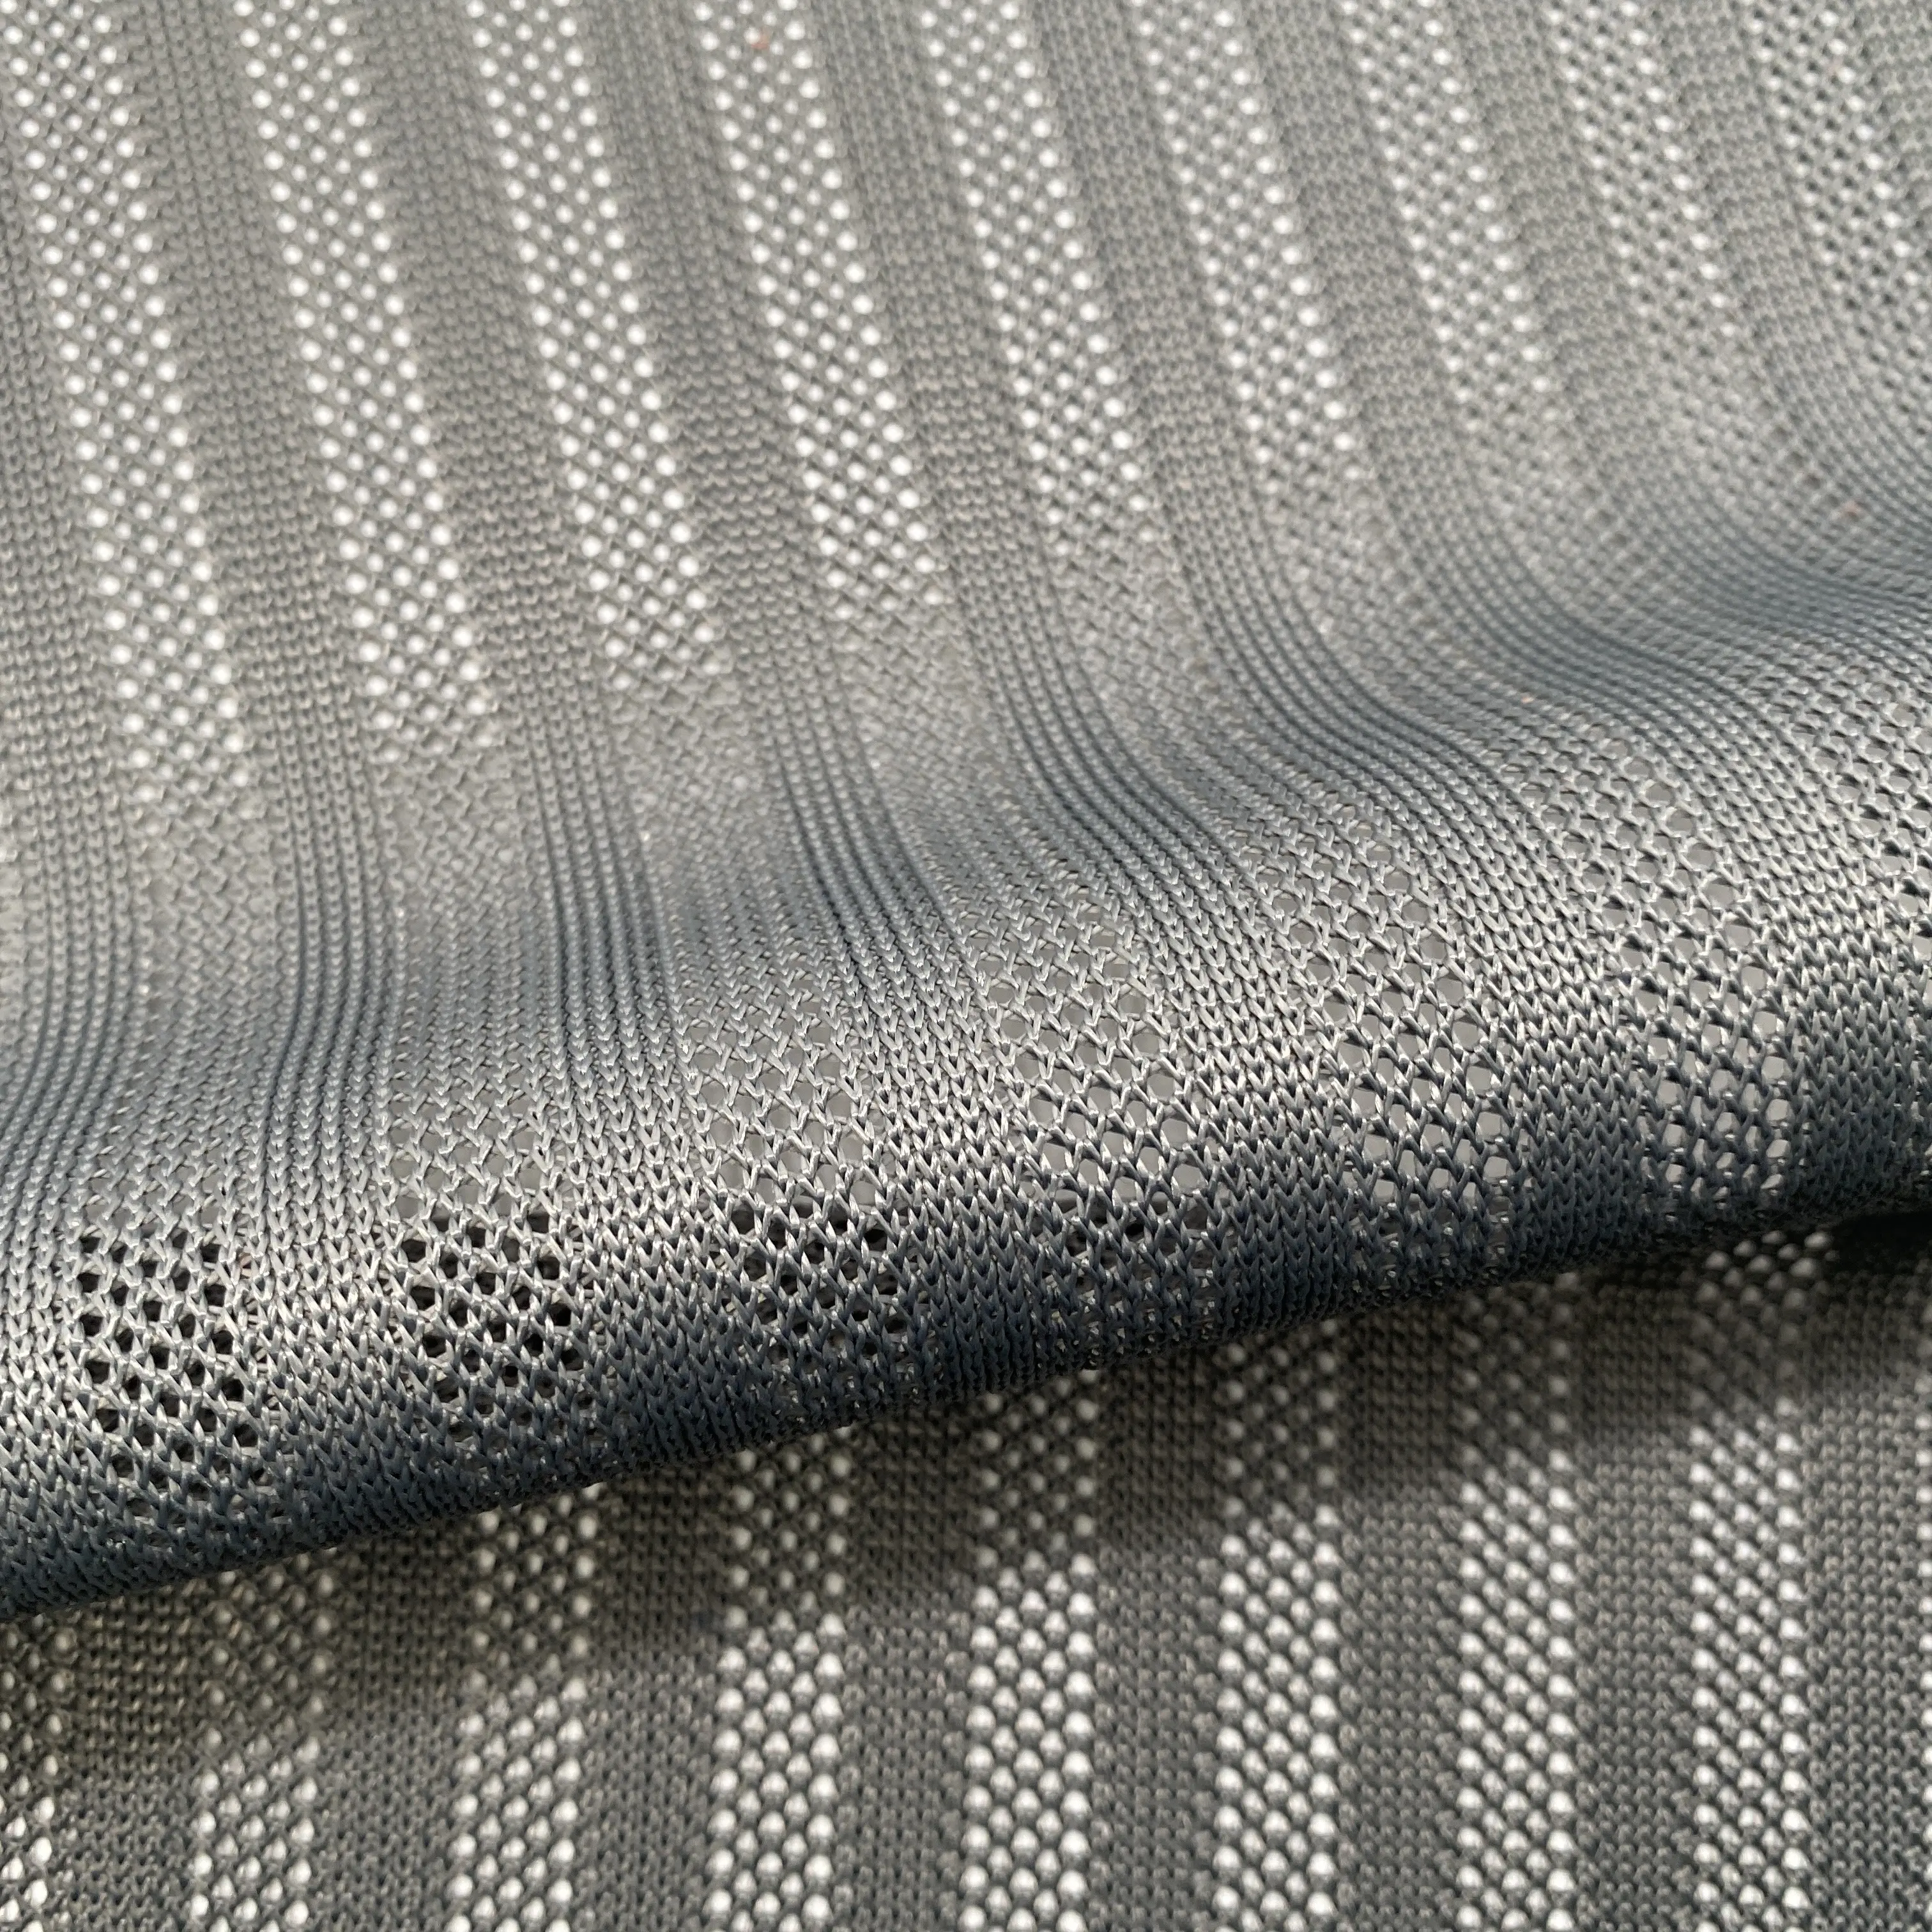 Bande 100% maille polyester raschon tricotée pour chaise de bureau, berceau, meubles d'extérieur, matériau de dossier